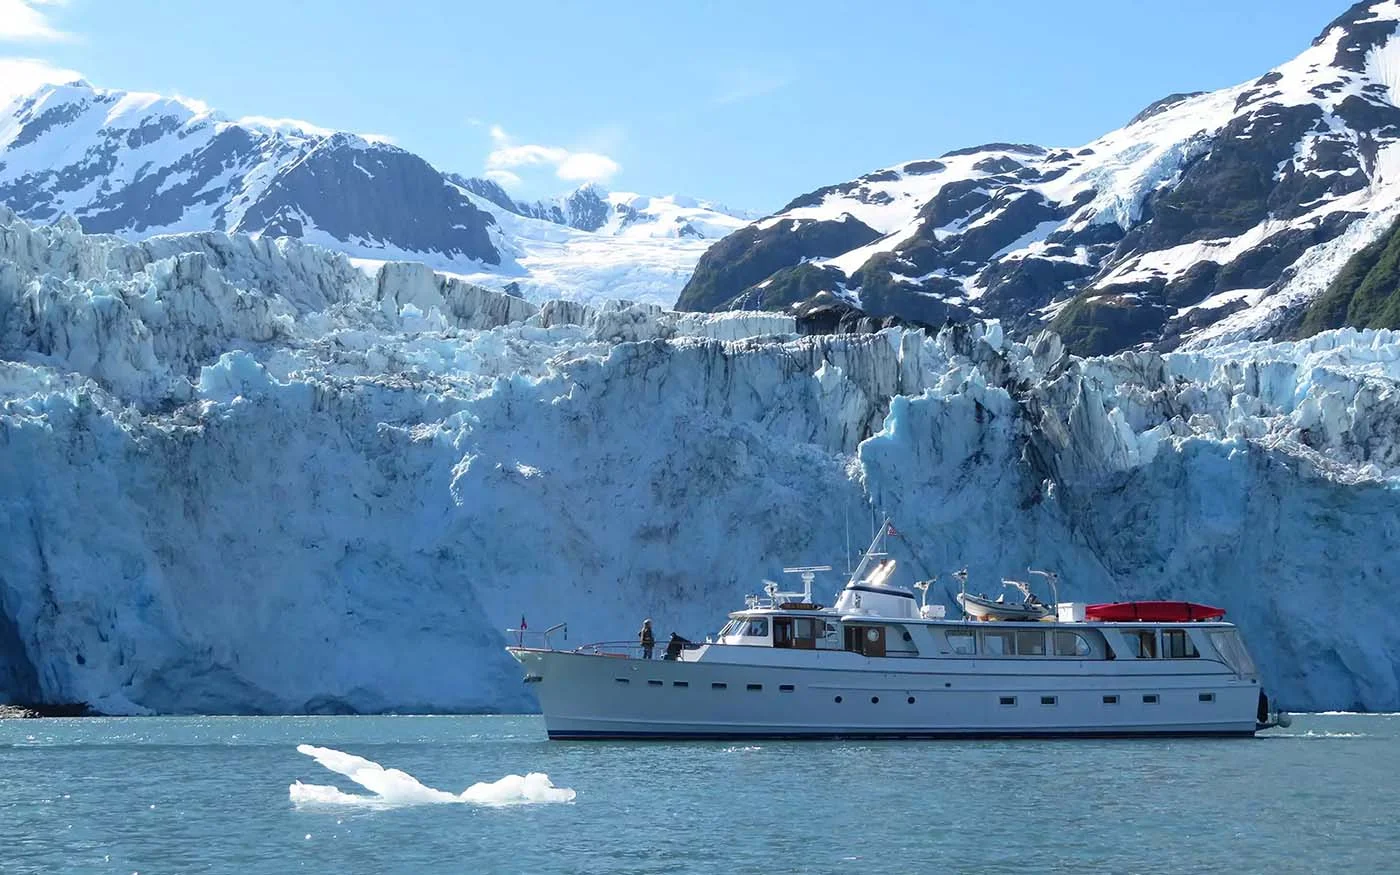 glacier cruise of Prince William Sound